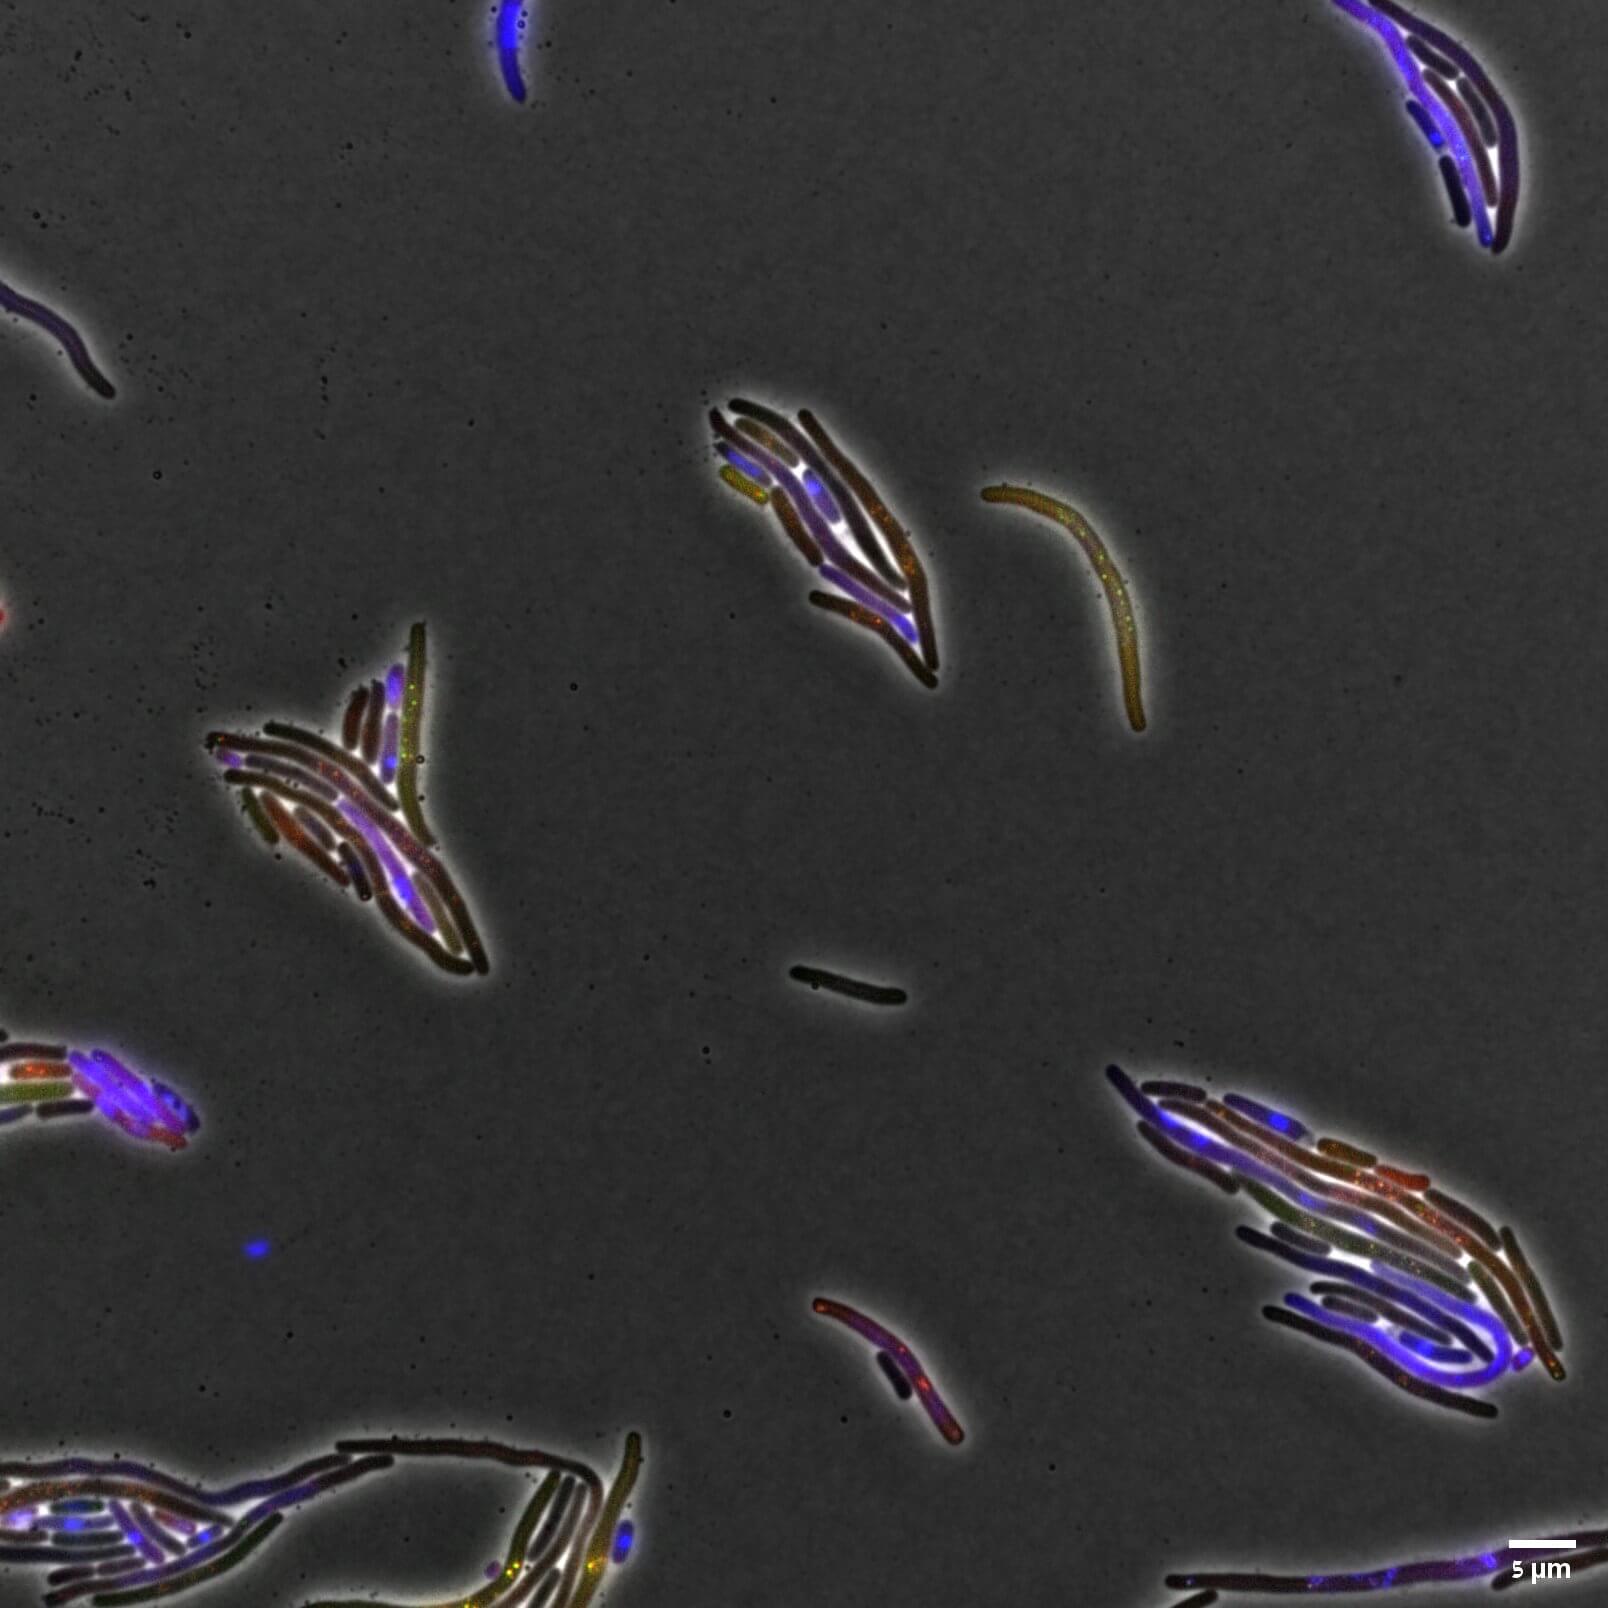  עיכוב חלוקה של חיידקים לאחר ביטוי של החלבון. צילום: ד"ר טרידיב מהאטה.